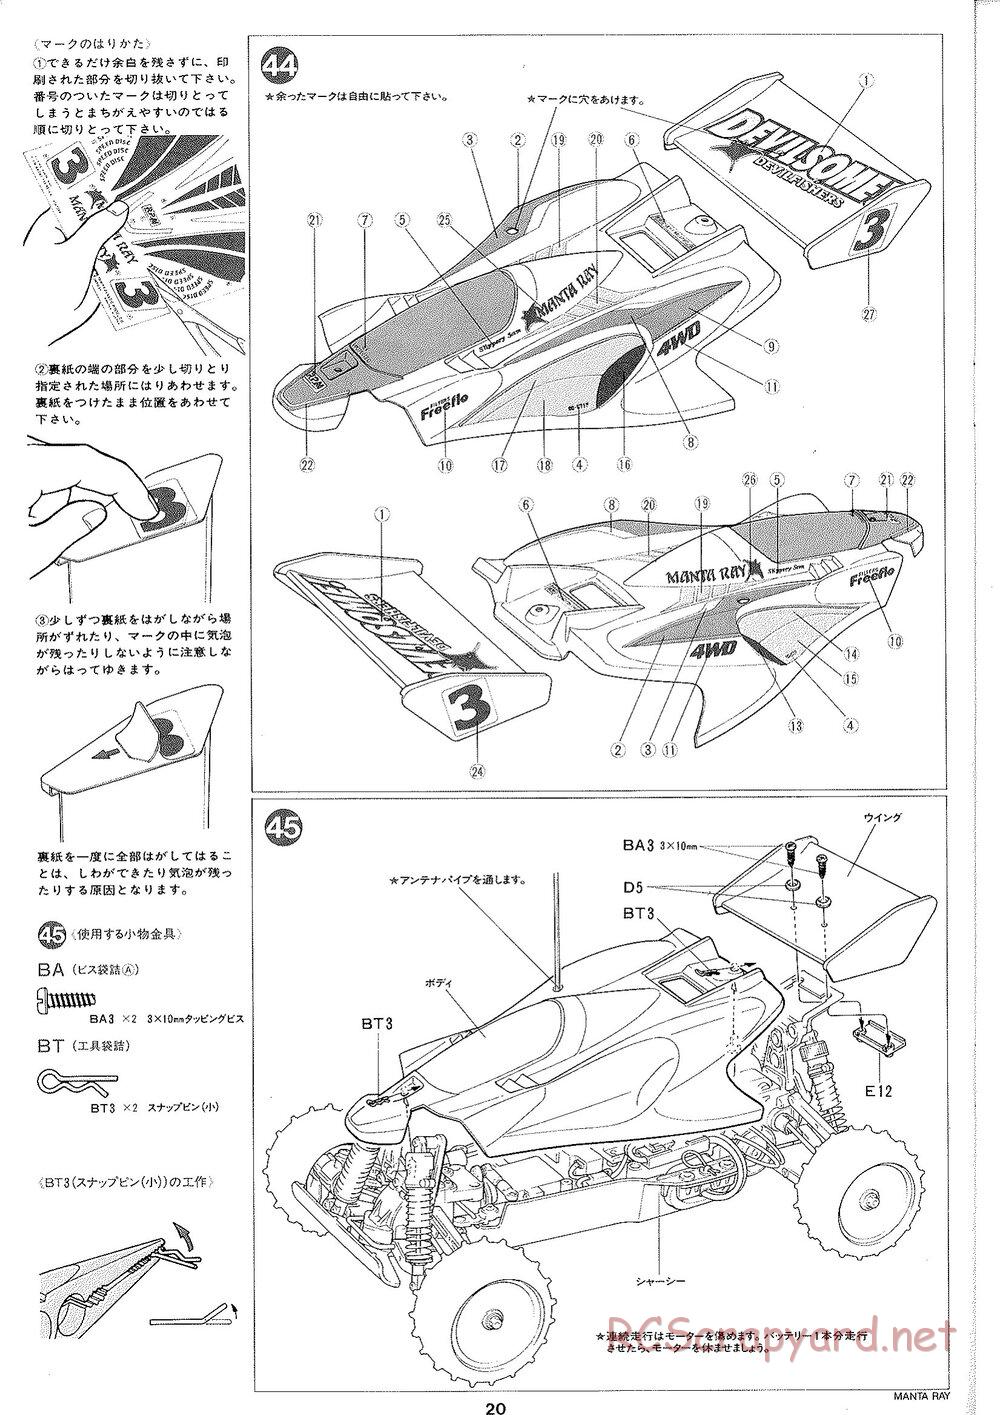 Tamiya - Manta Ray 2005 - DF-01 Chassis - Manual - Page 21